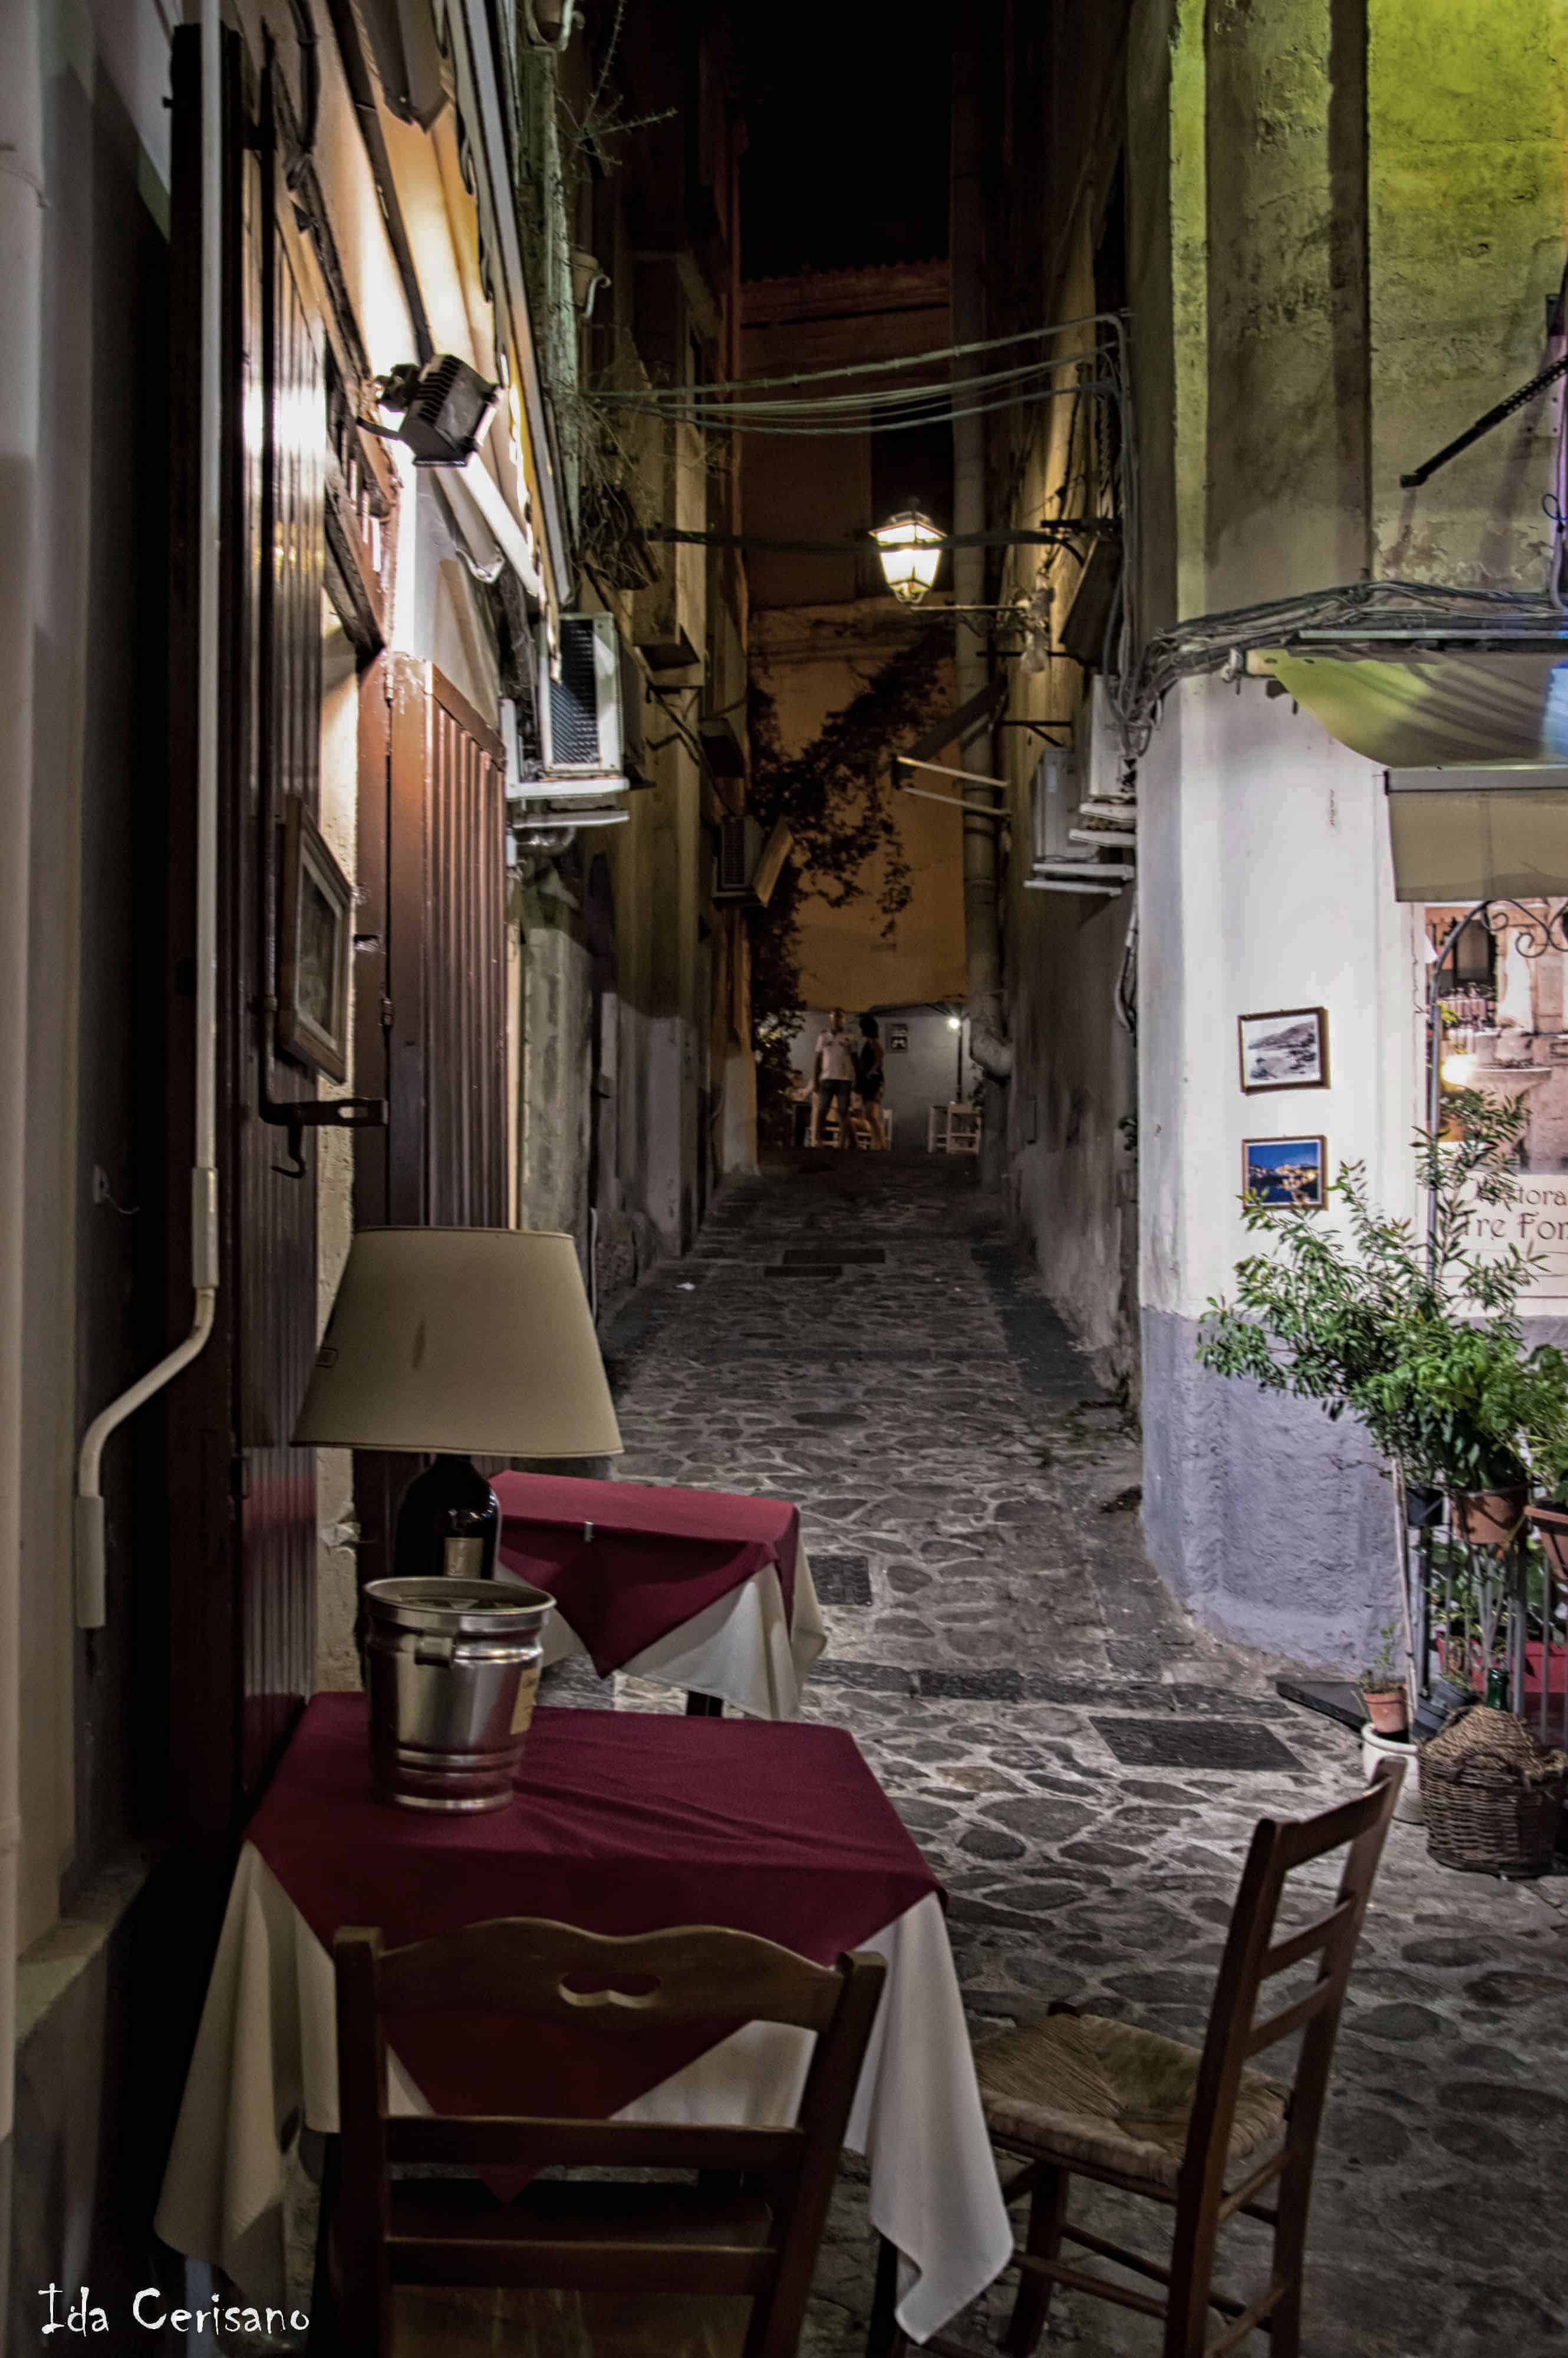 The streets of the historic center of Tropea  | Ida Cerisano - e-borghi Community